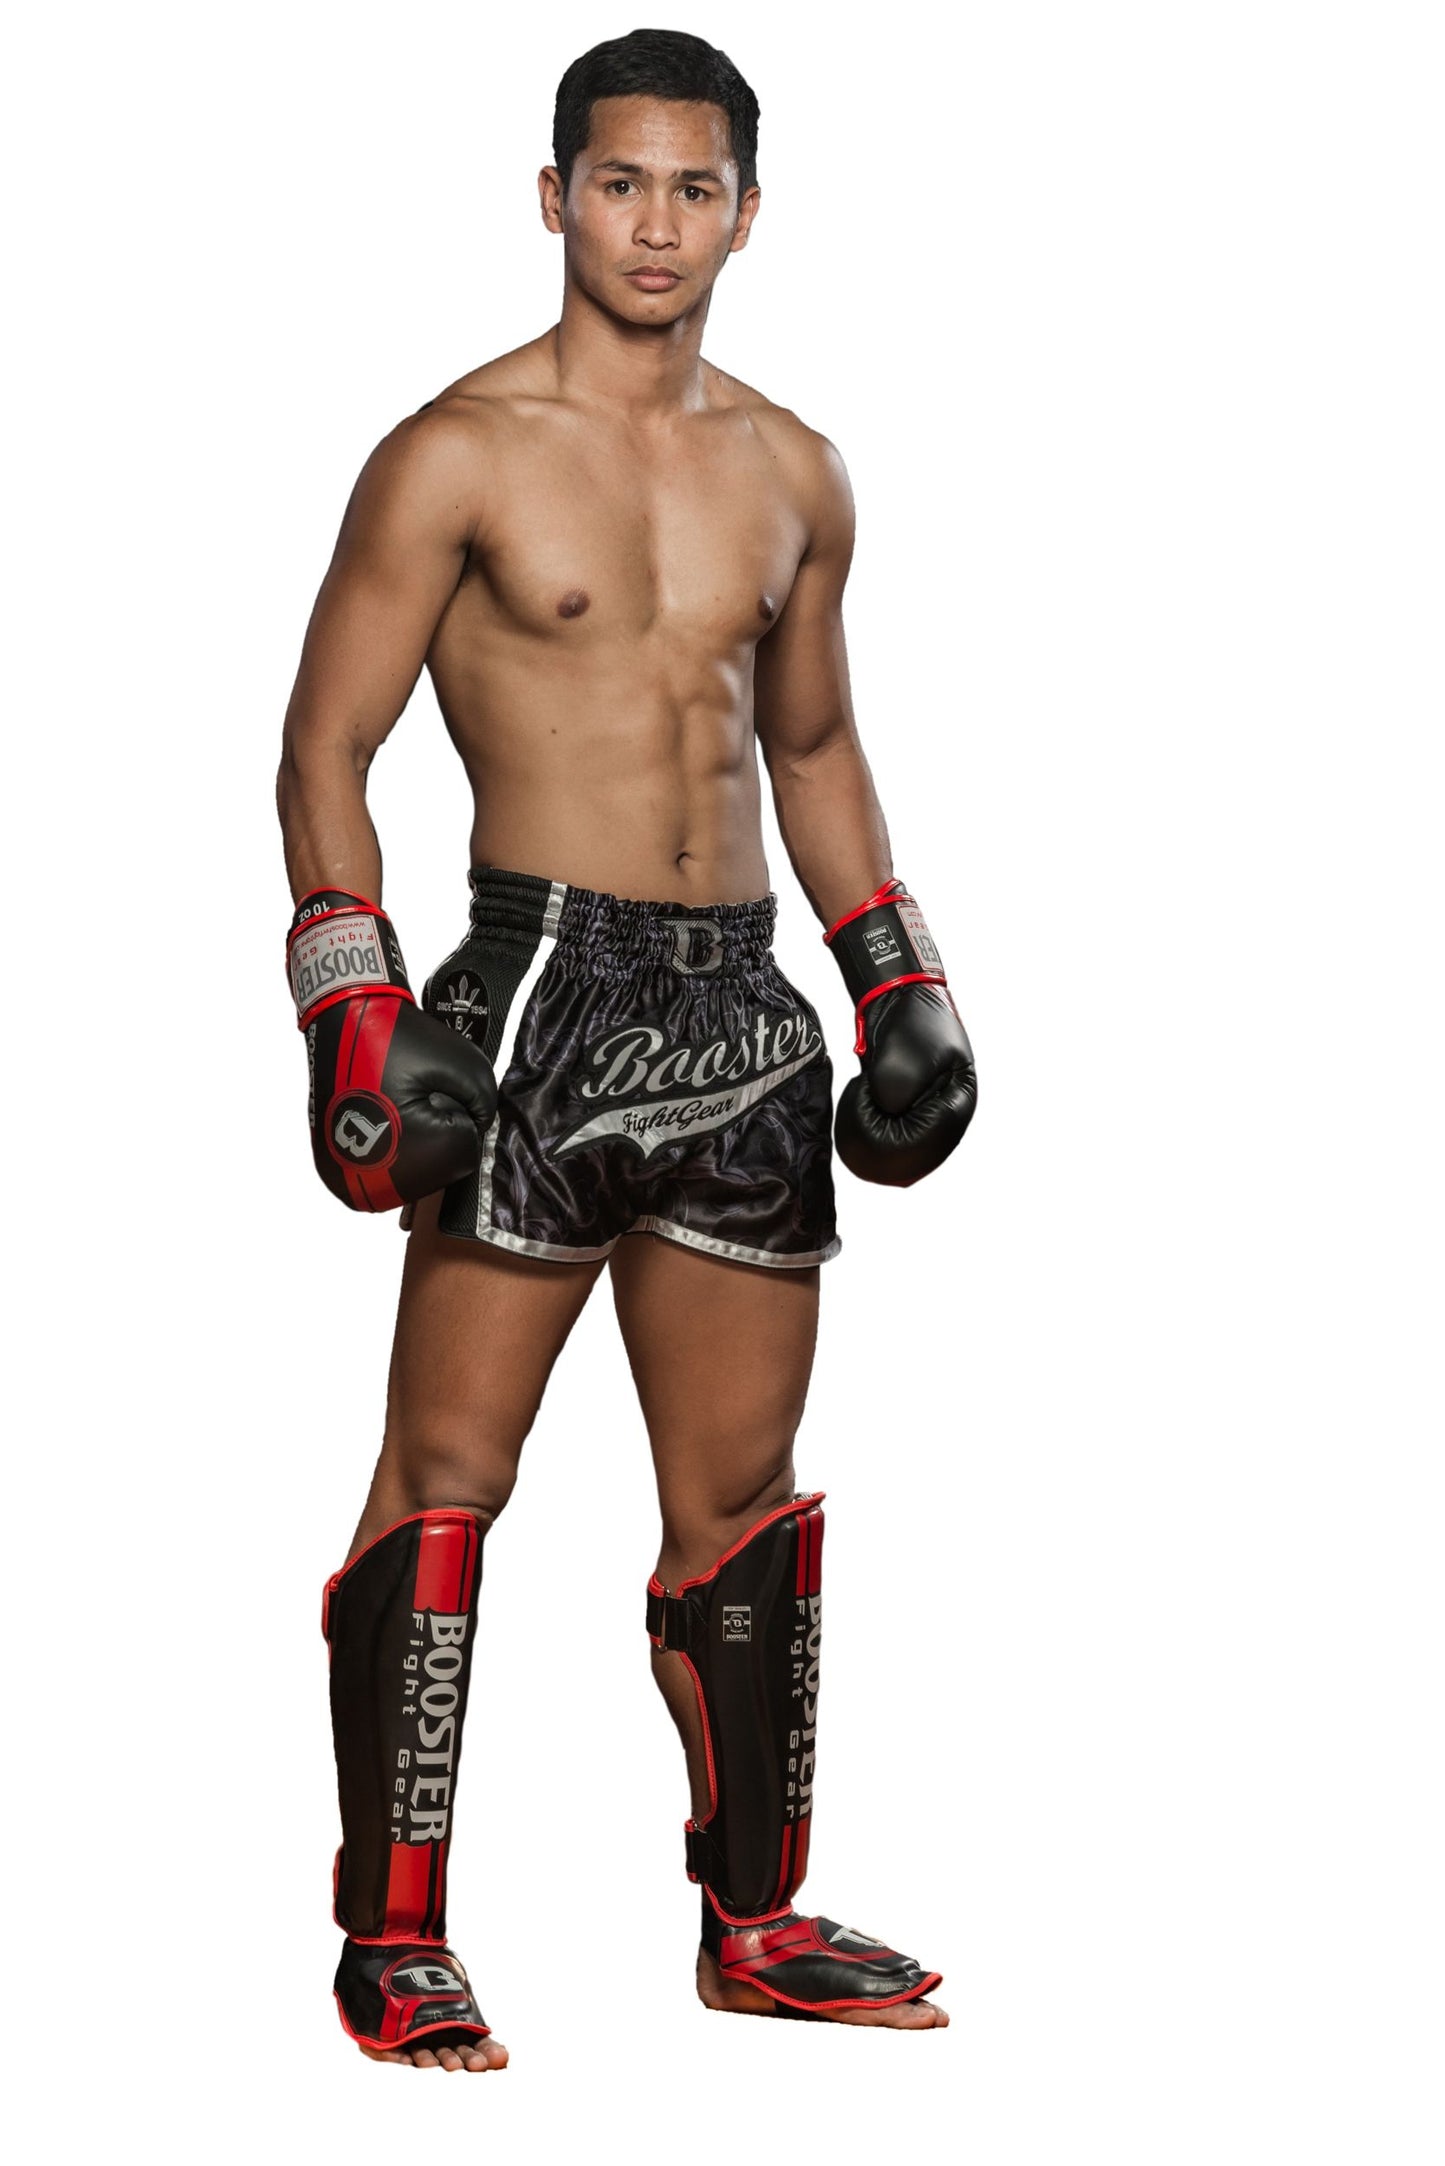 Booster Leather Boxing Gloves Pro Range BGL 1 V3 Black Red Foil